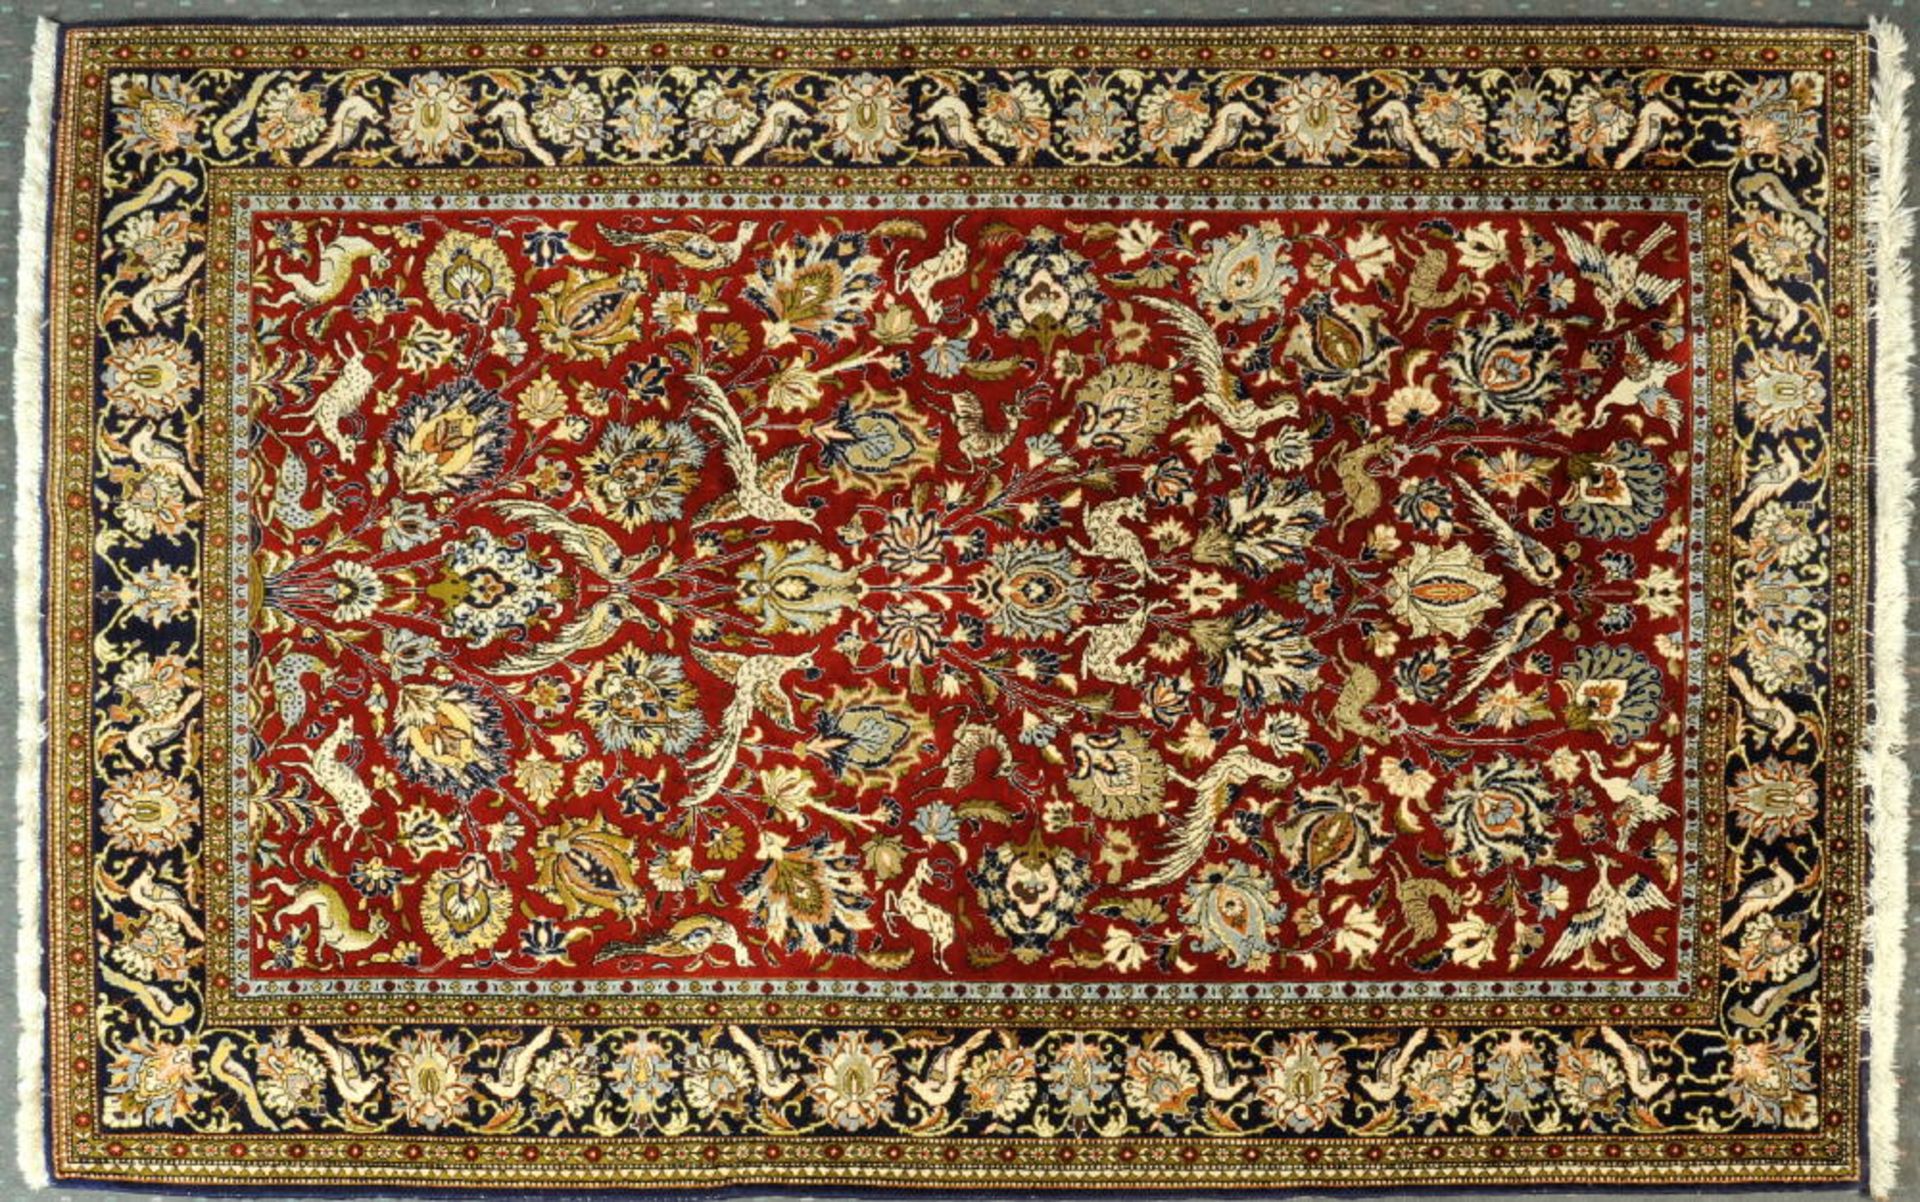 Ghoum, Persien, 141 x 214 cmälter, Wolle mit Seide, sehr feine Knüpfung, rotgrundig,